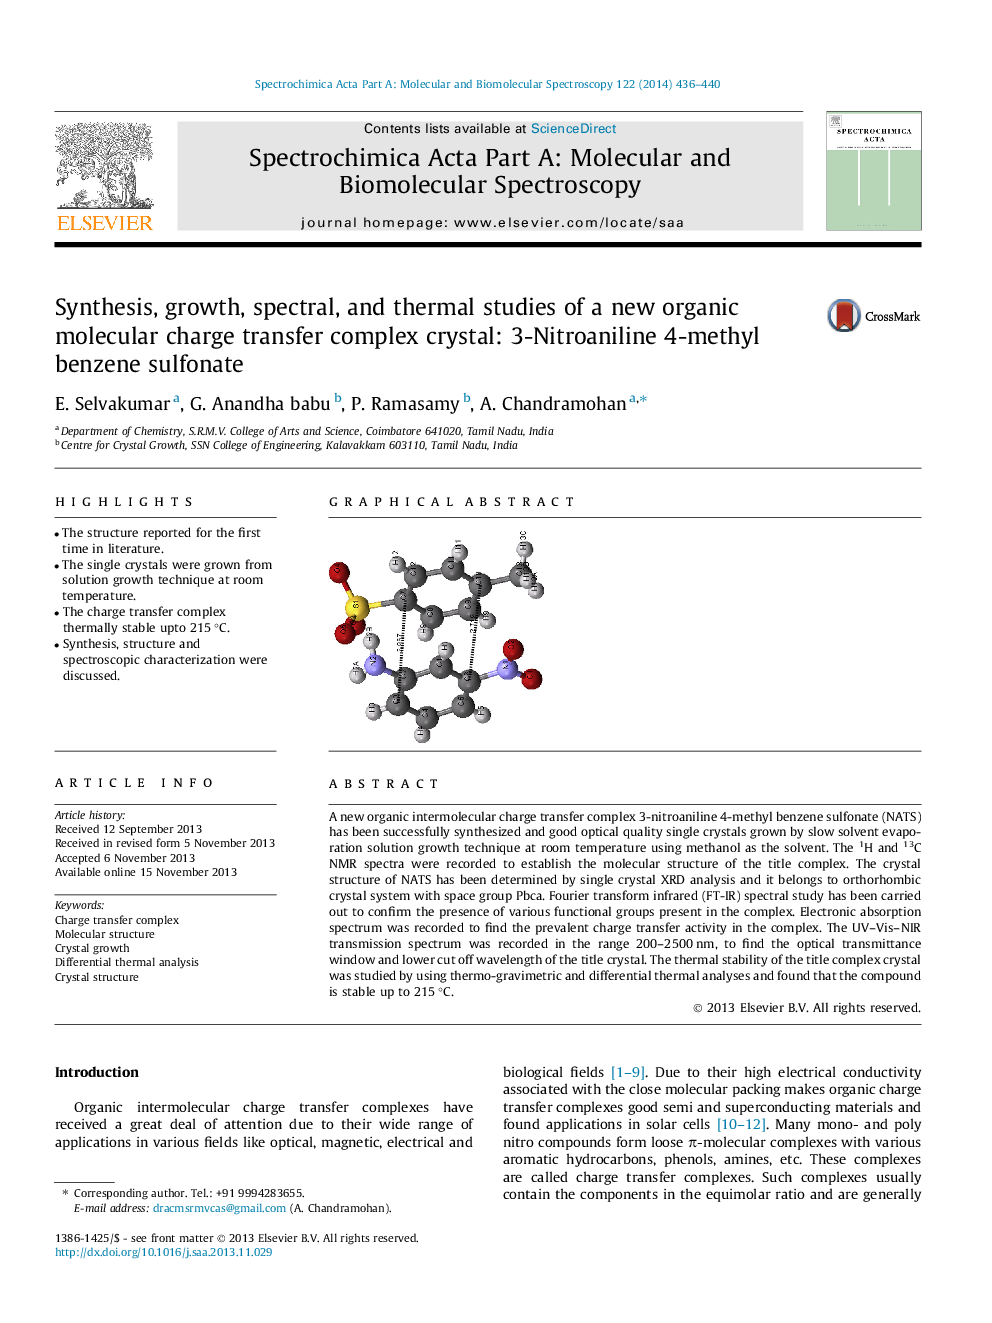 سنتز، رشد، طیفی و مطالعات حرارتی یک کریستال مجتمع انتقال بار مولکولی جدید: 3-نیتروانیلین 4-متیل بنزن سولفونات 